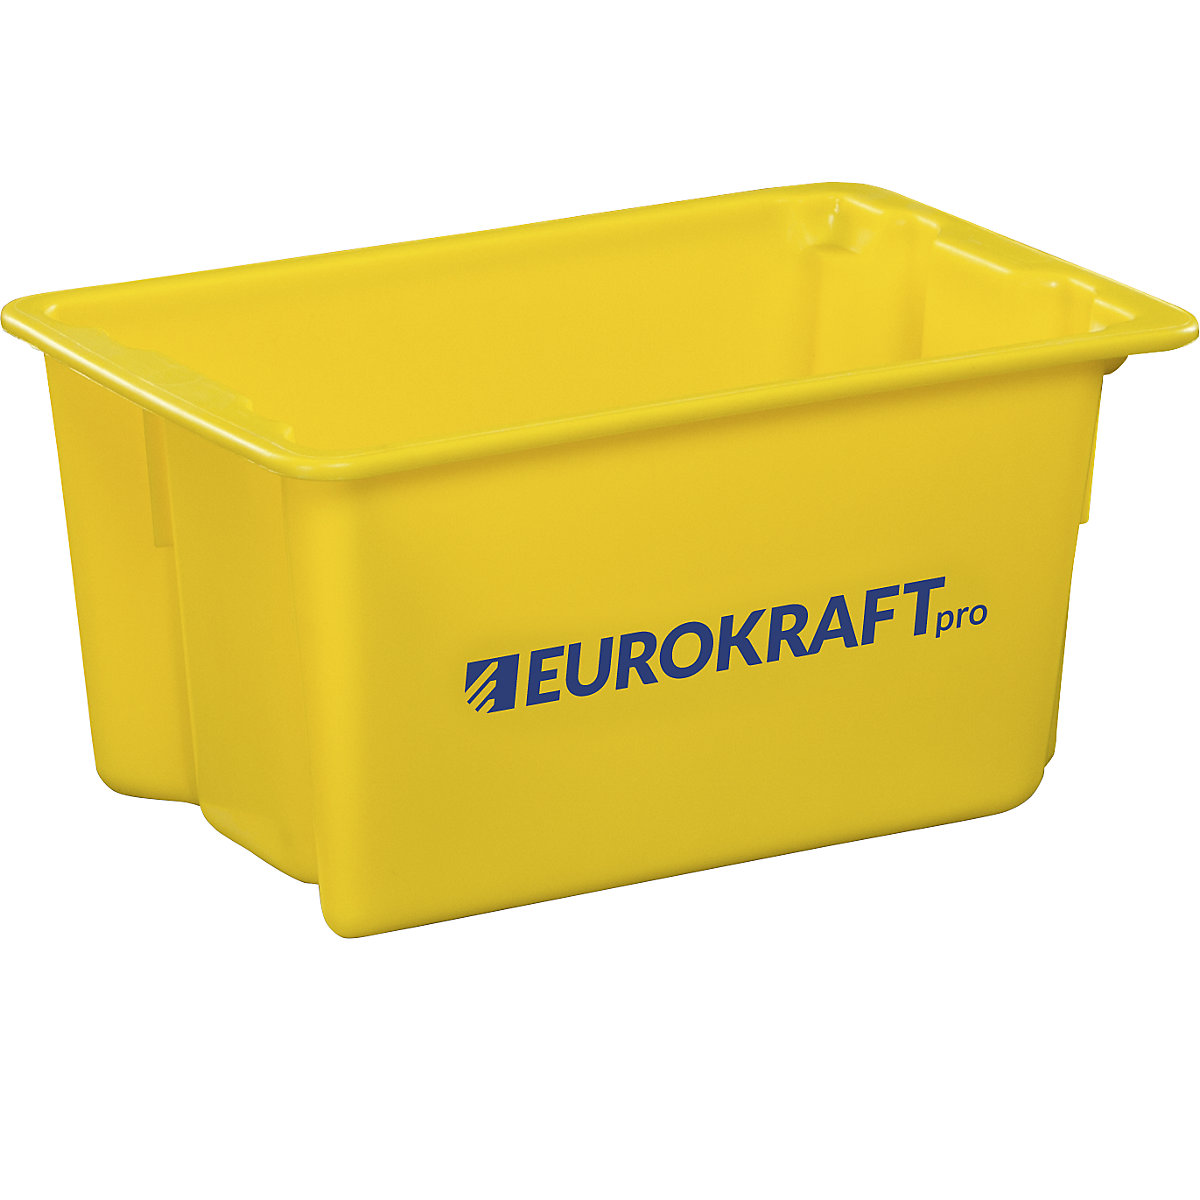 Elforgatva egymásra rakható tárolók élelmiszerekhez alkalmas polipropilénből – eurokraft pro, térfogat 50 l, cs. e. 3 db, zárt falak és alj, sárga-5